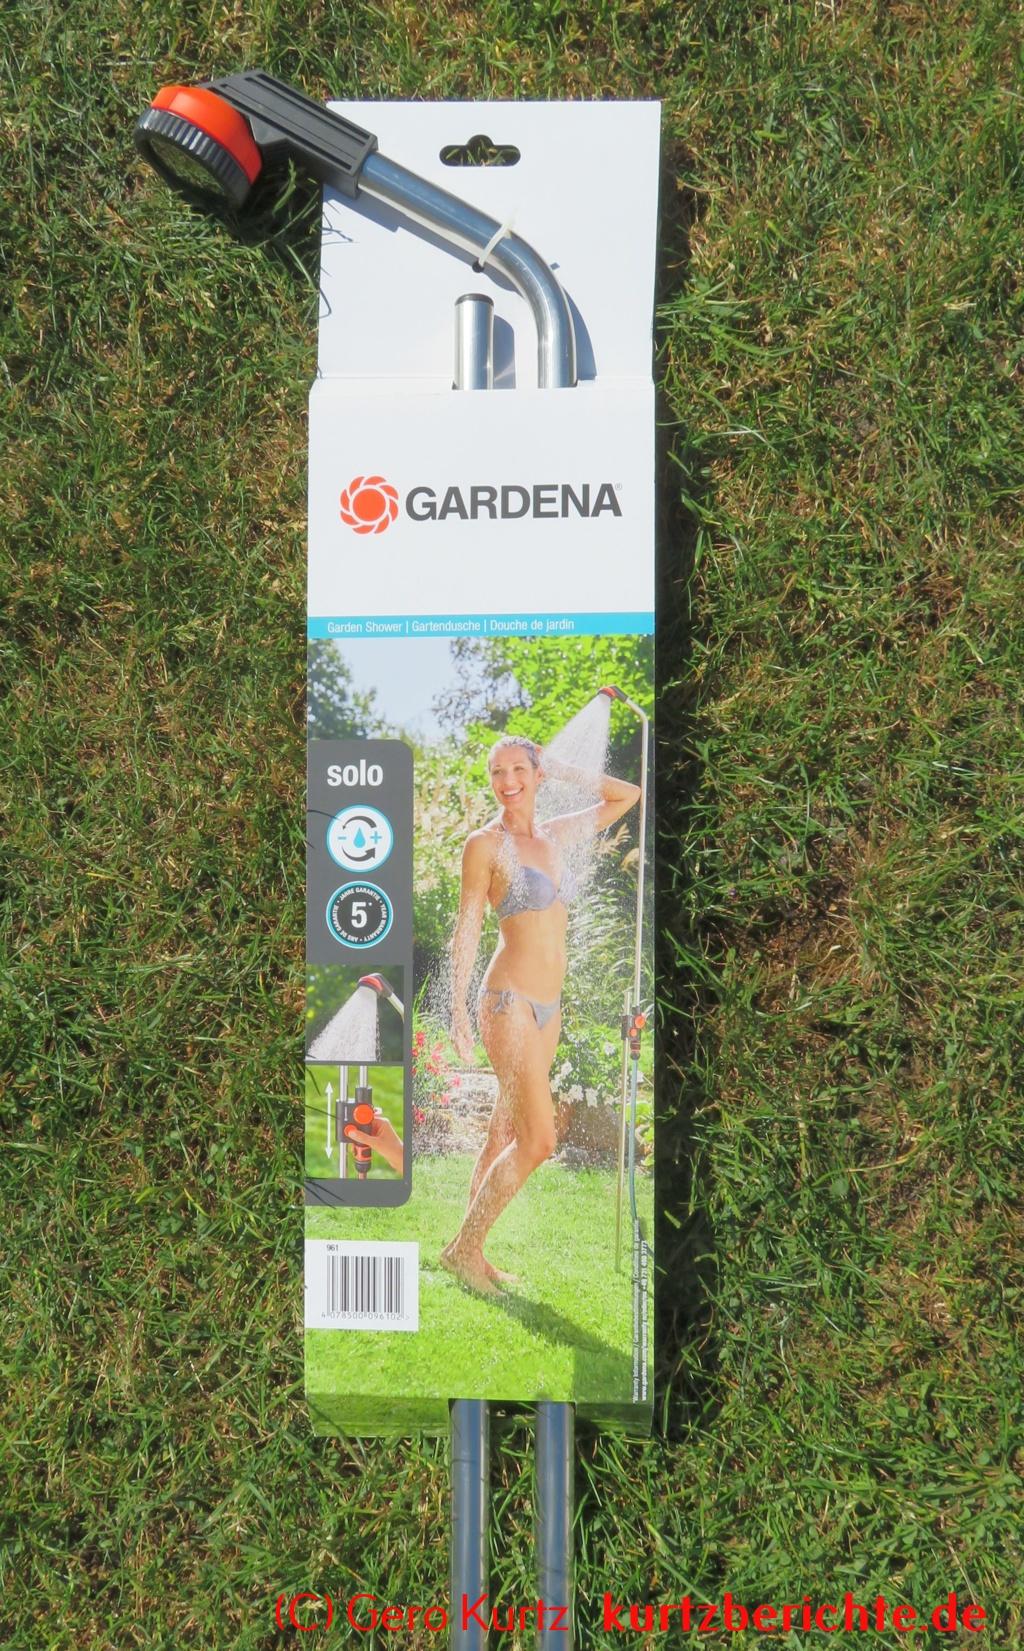 Gardena Gartendusche Solo - oberer Teil der Dusche